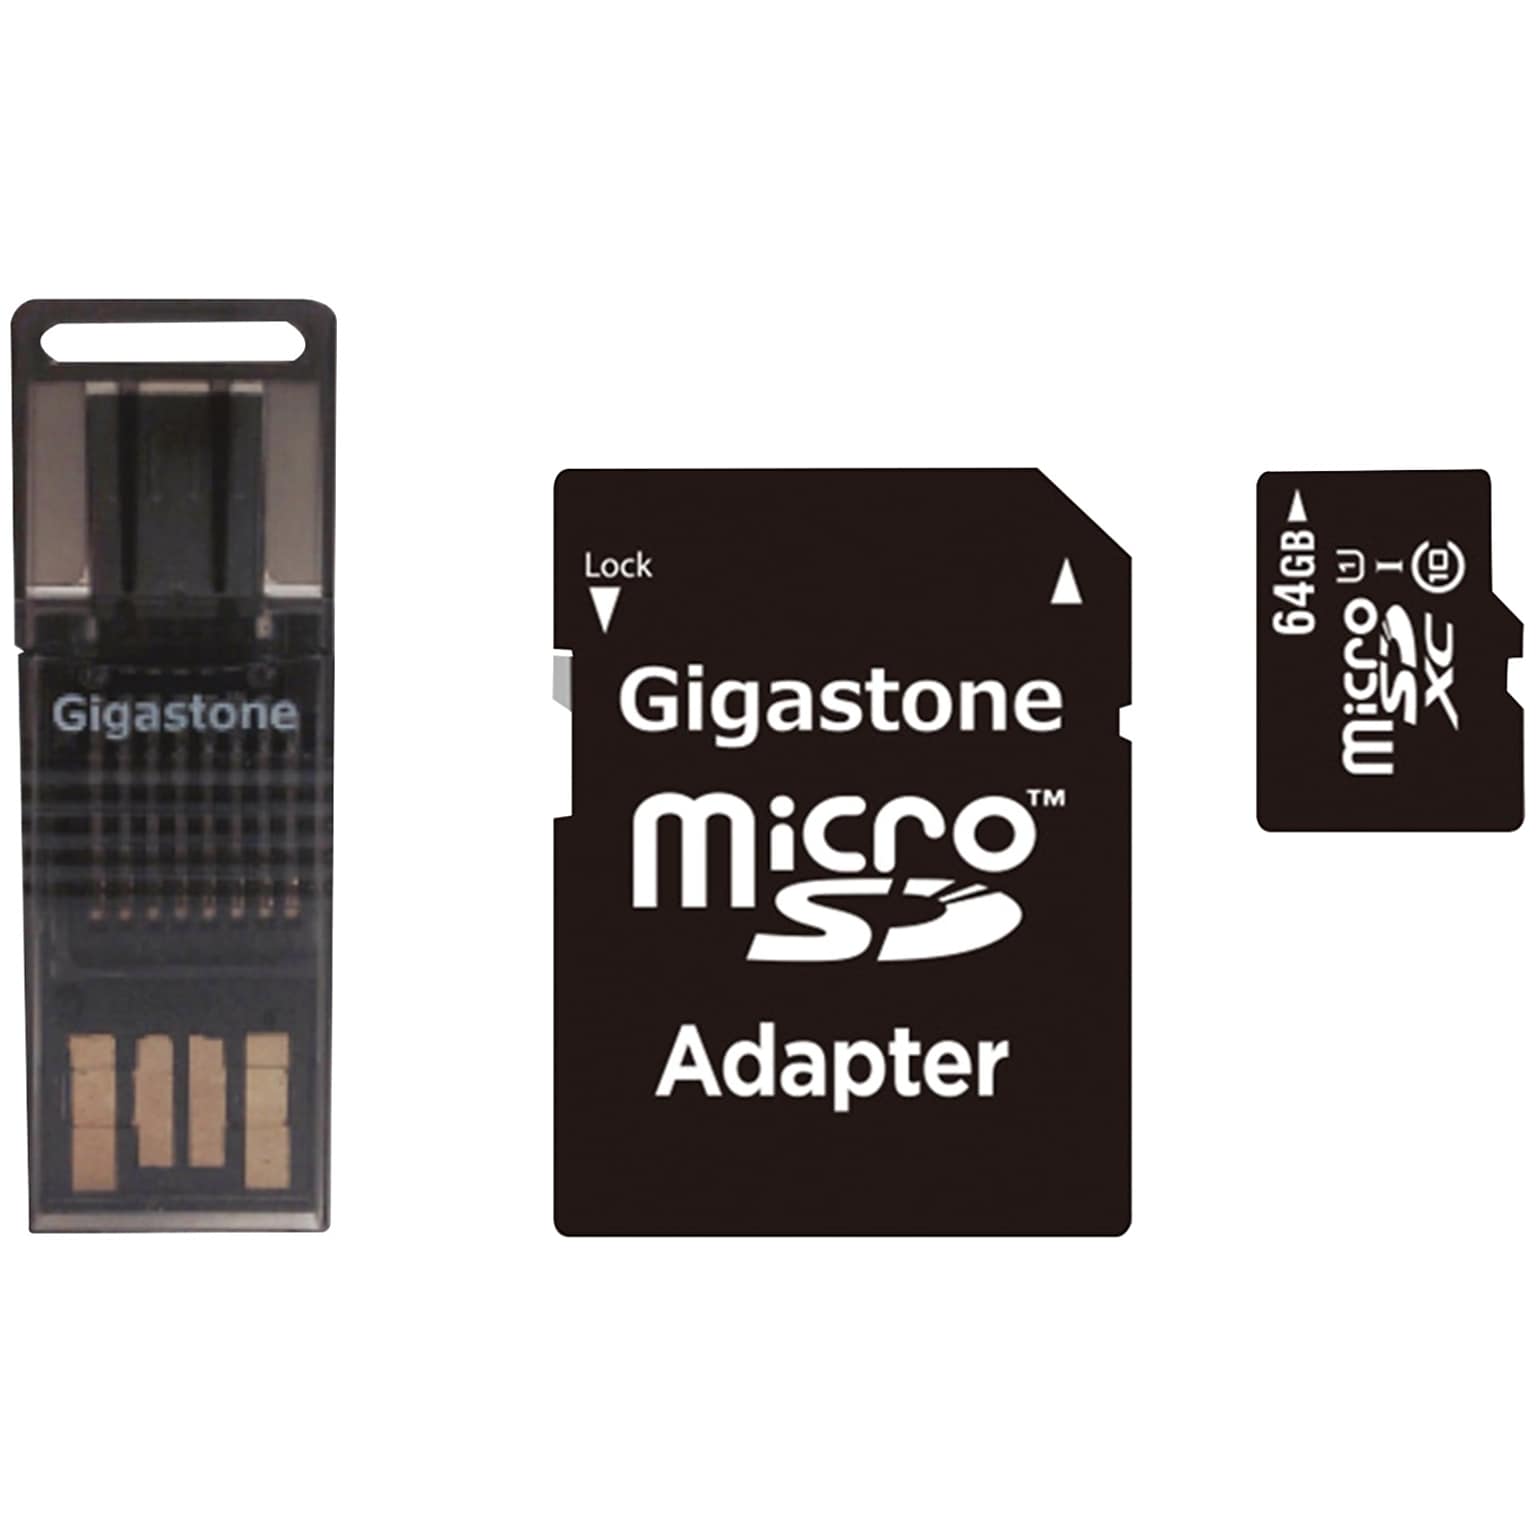 Gigastone GS-4IN1600X64GB-R         Prime Series microSD Card 4-in-1 Kit (64GB) (GIGS4IN164GBR)